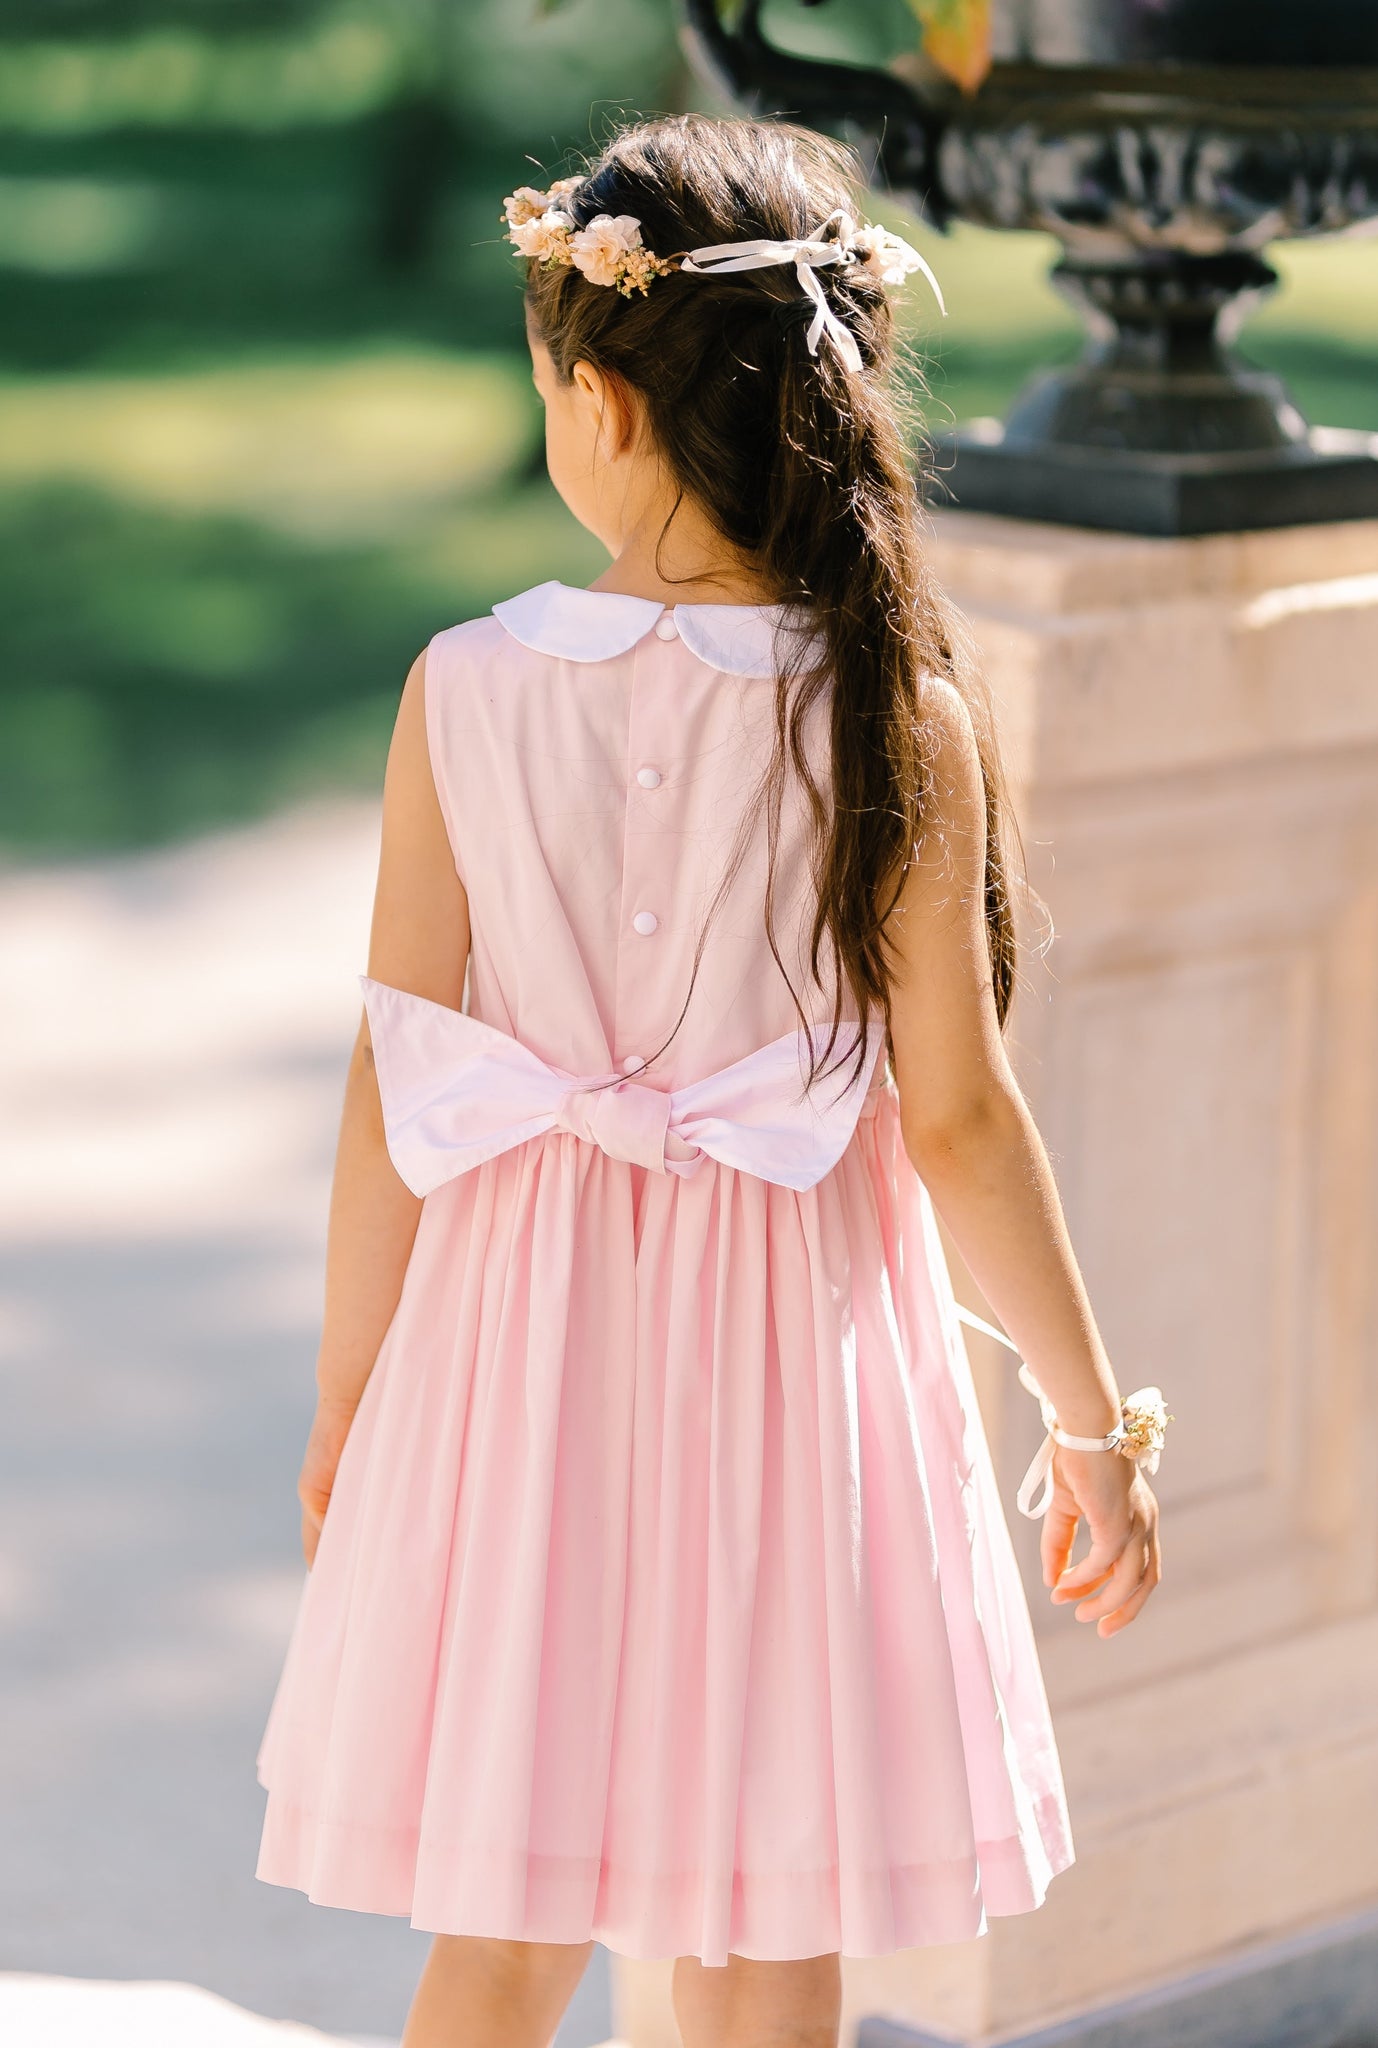 Antoinette Paris | Handmade Smocked Dresses